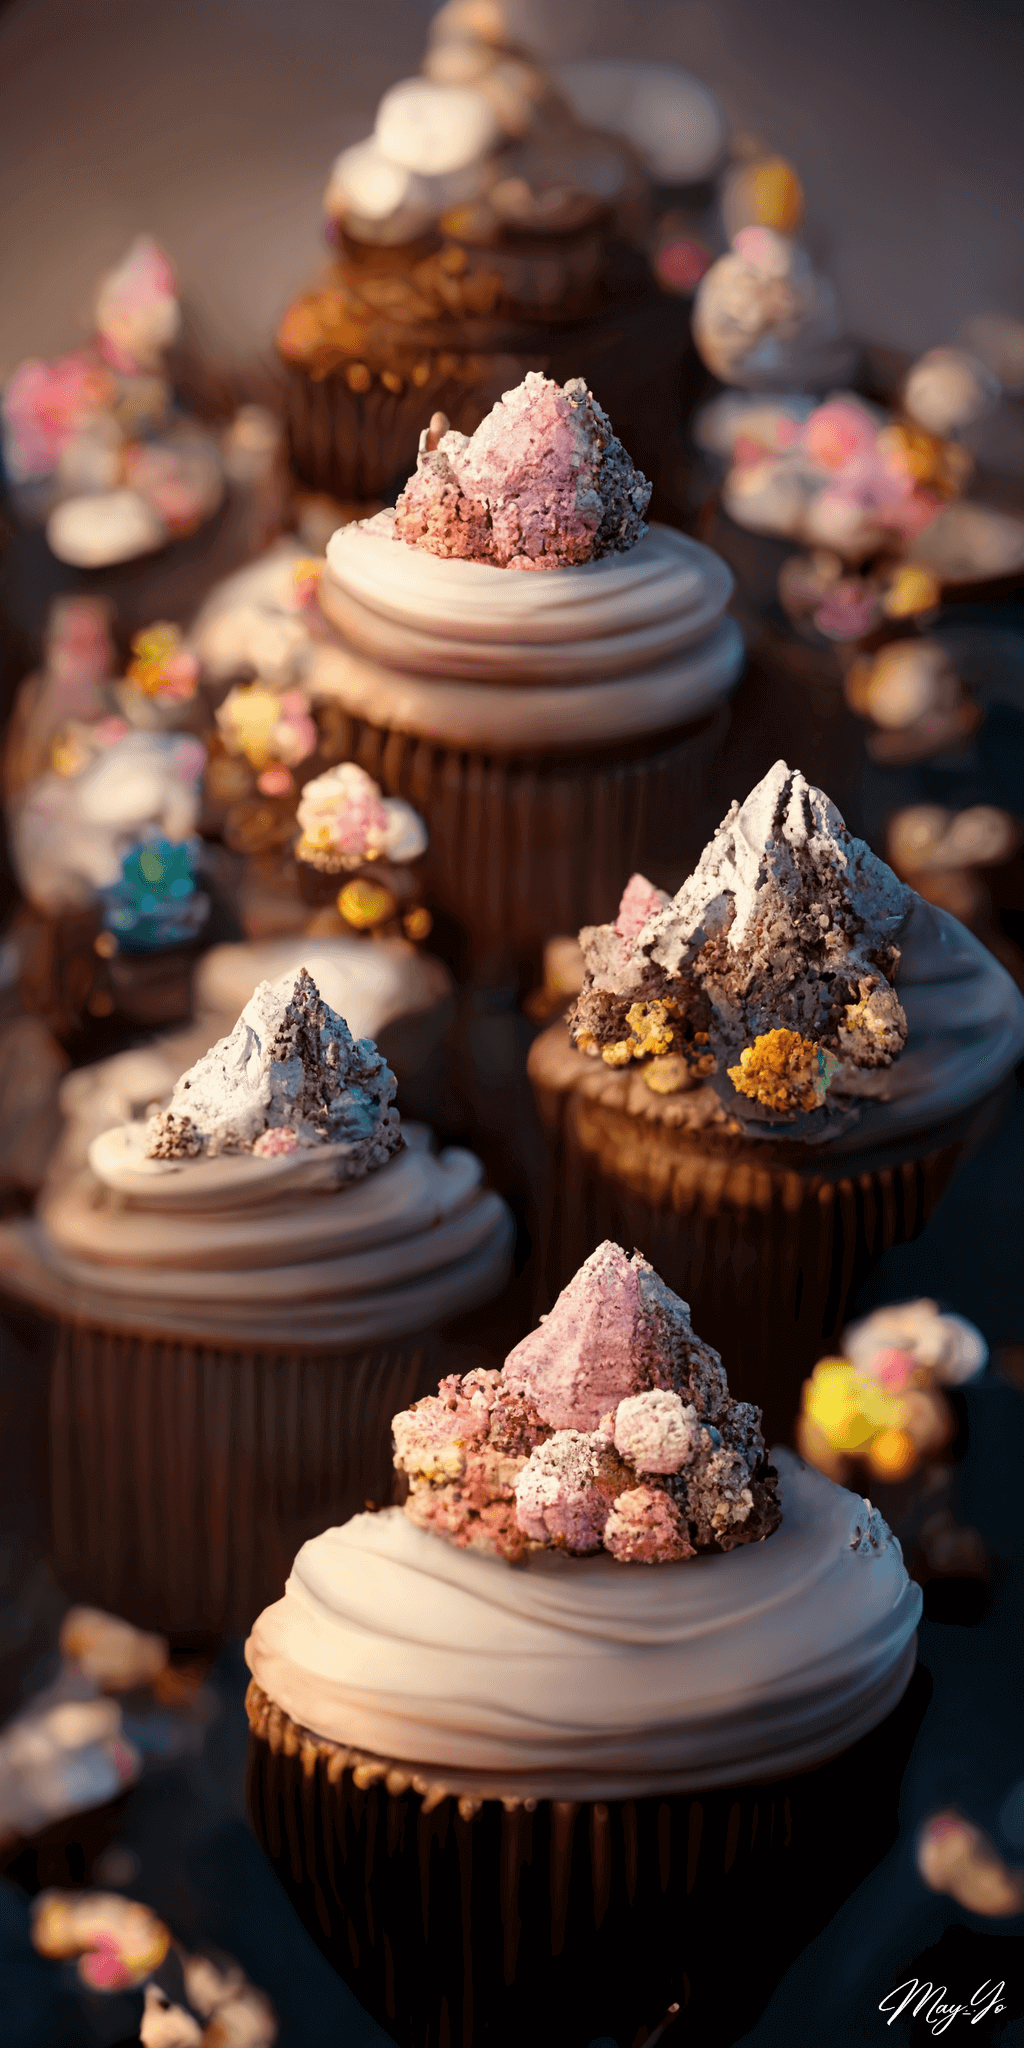 クリームがたっぷりのカップケーキでできた山のイラスト 山のようなカップケーキの待受 AIイラスト待受 縦長画像 cupcake with cream illustration tasty mountain